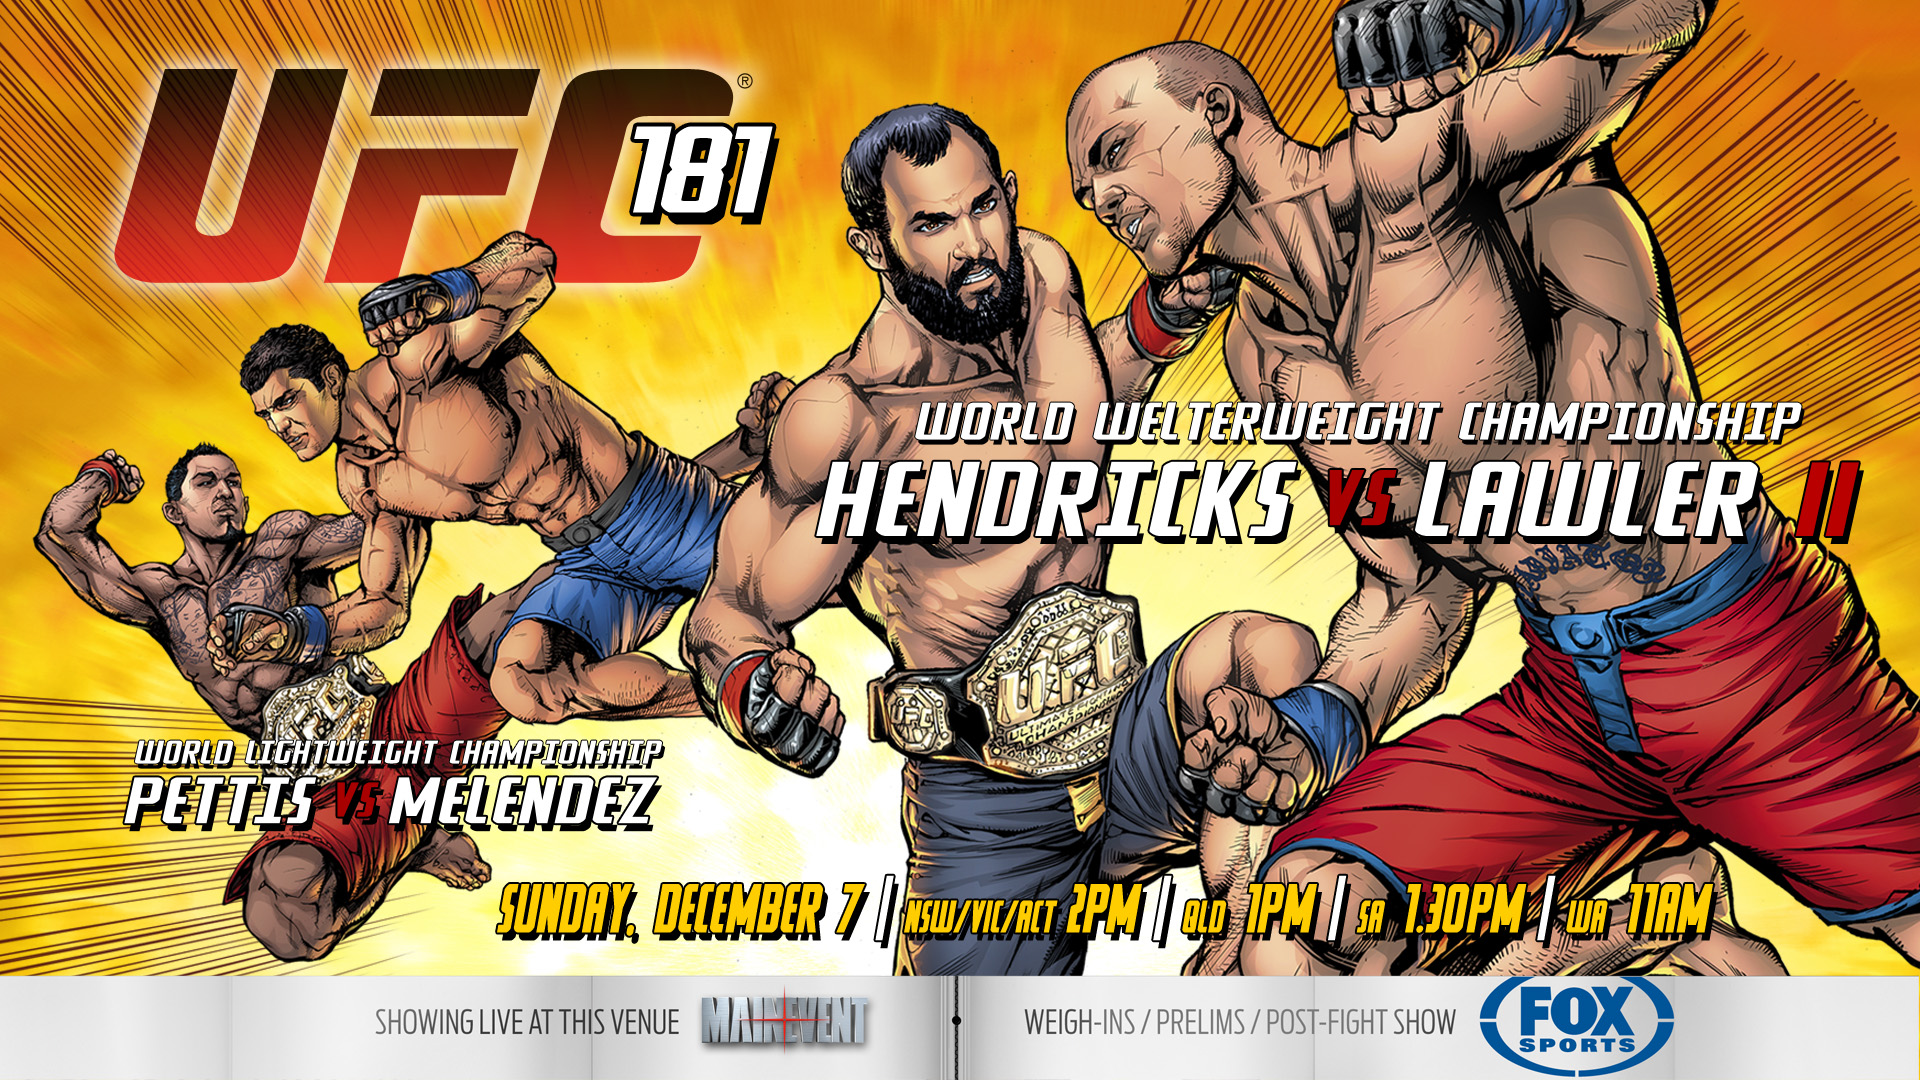 UFC 181 - Les posters et les affiches à Houston à Vegas - UFC Fans France